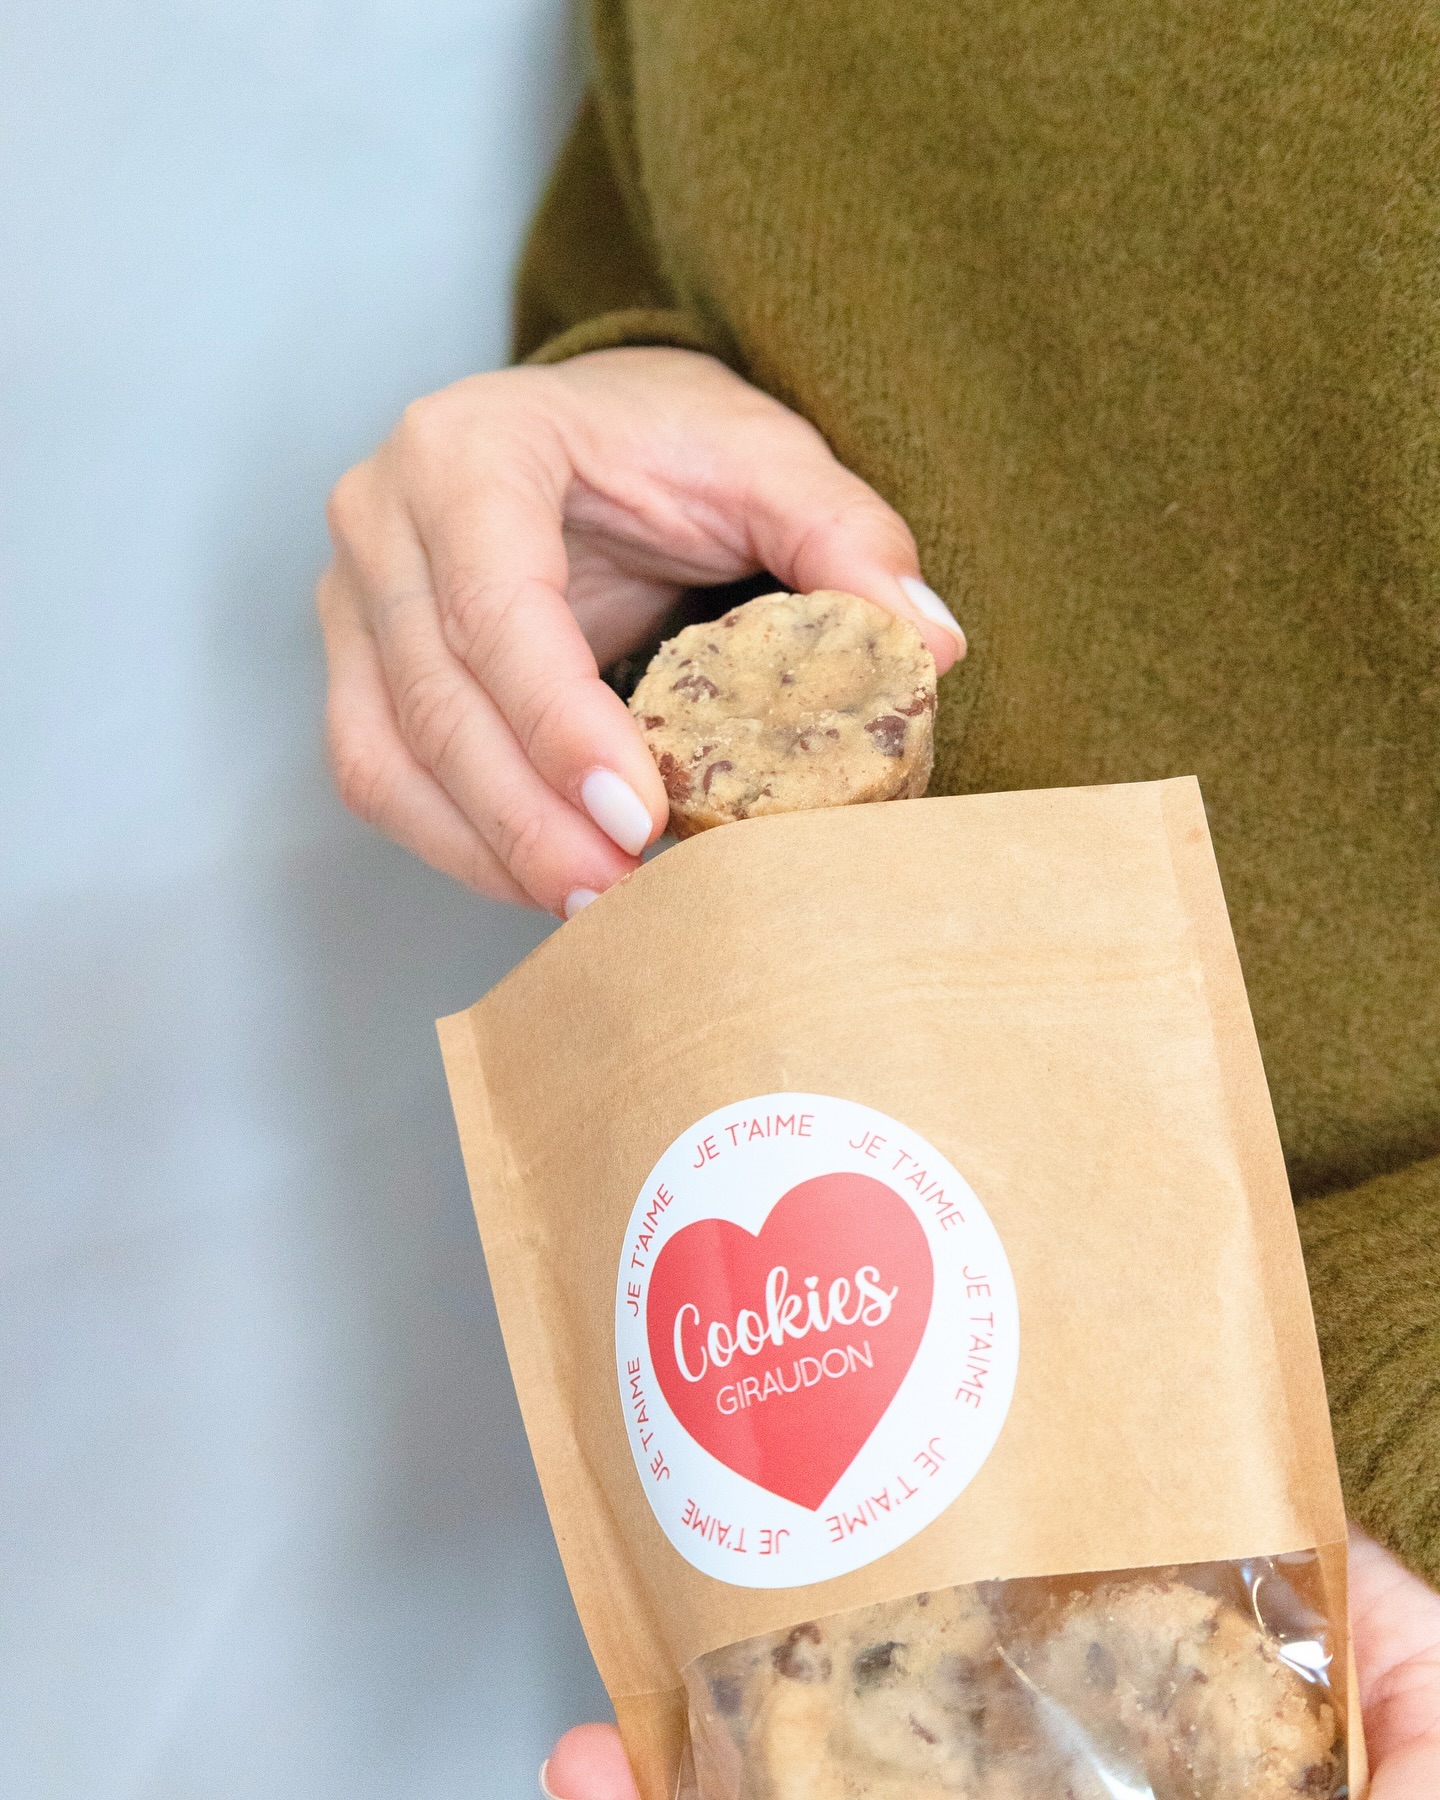 Avec Cookies Giraudon, 

Personnalisez vos paquets pour des occasions particulières 🍪

Une petite intention, qui fera très plaisir ! 💖

🍪 Faits maison à Gémenos (13)
📍Disponibles dans plusieurs points de vente
💌 Plus d’infos sur notre site web (lien dans notre bio)

#CookiesGiraudon #CookiesFaitsMaison  #homemadewithlove #CookiesArtisanaux #FaitAvecAmour #Gémenos #RecetteAuthentique #Gourmands  #CuisineArtisanale #marseille #MadeInFrance #cookiesaddict